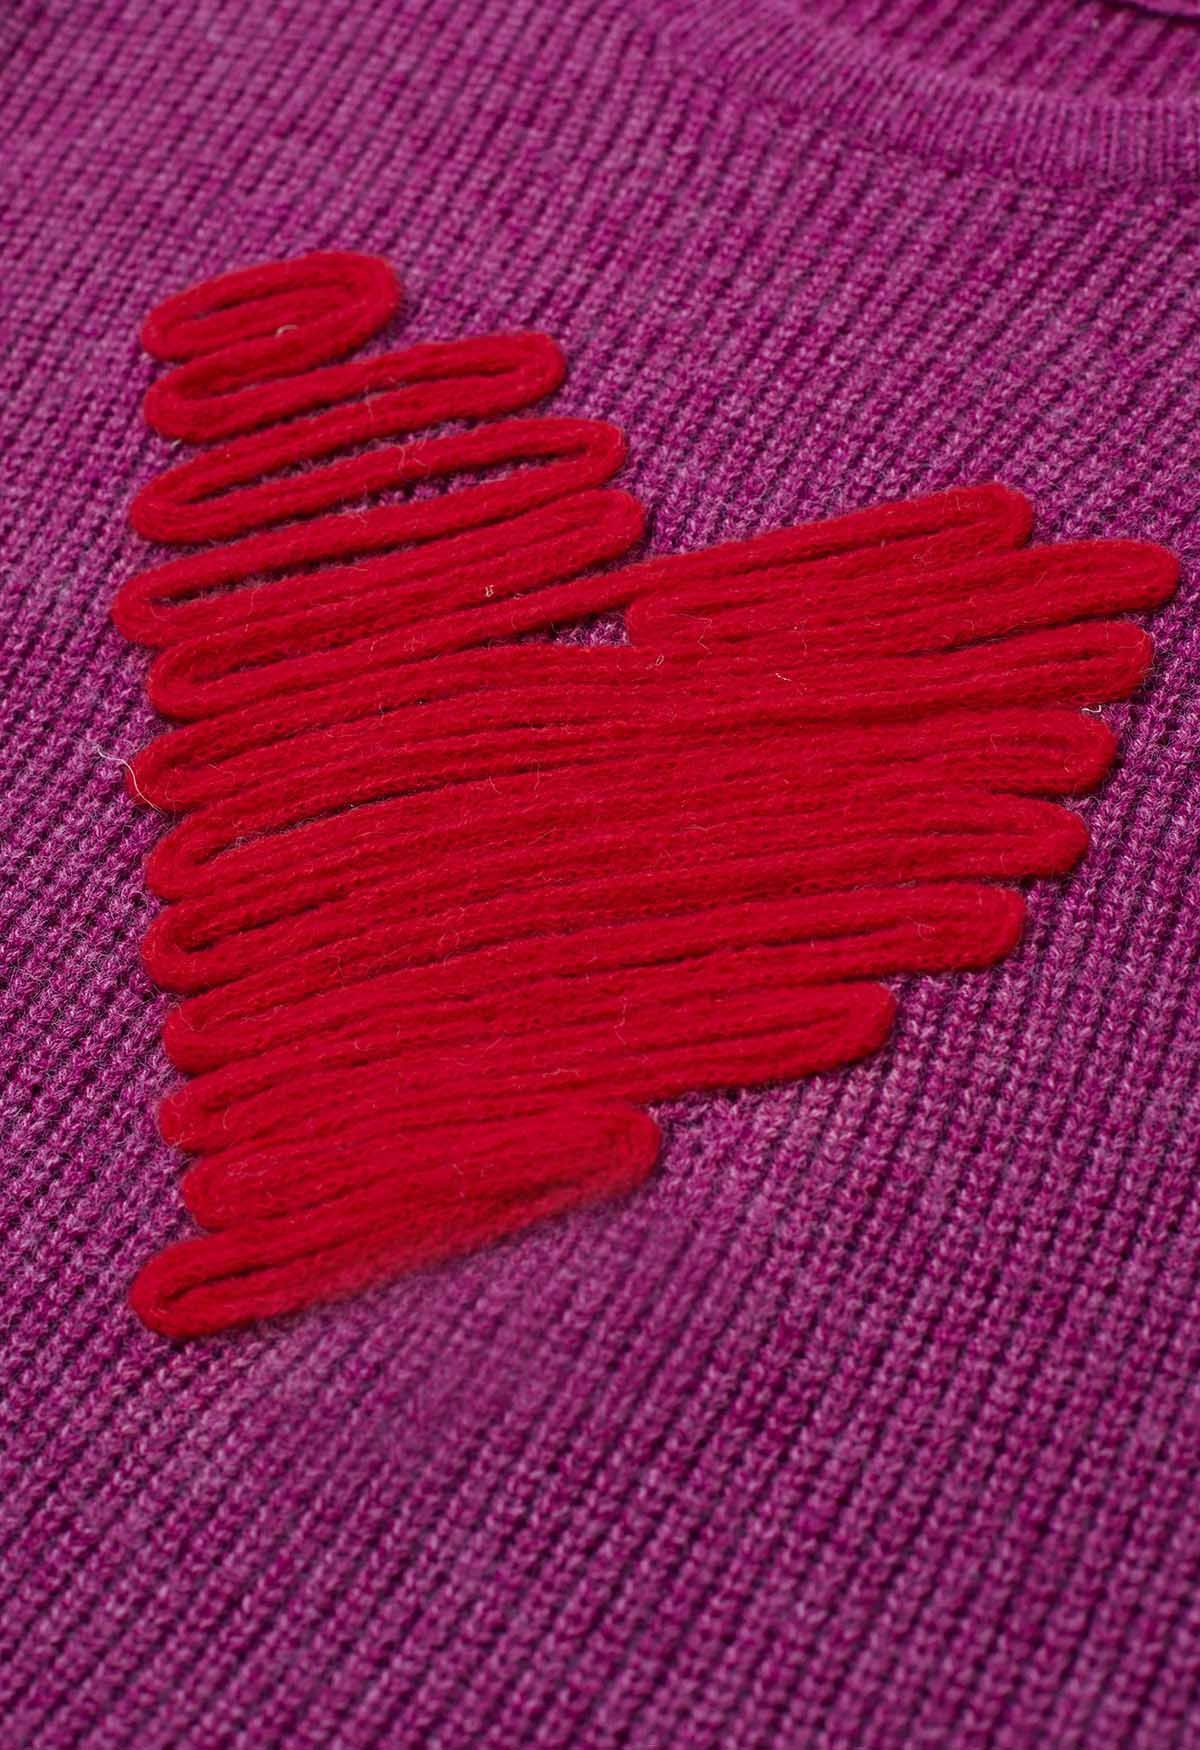 Doodle Heart Pattern Knit Sweater